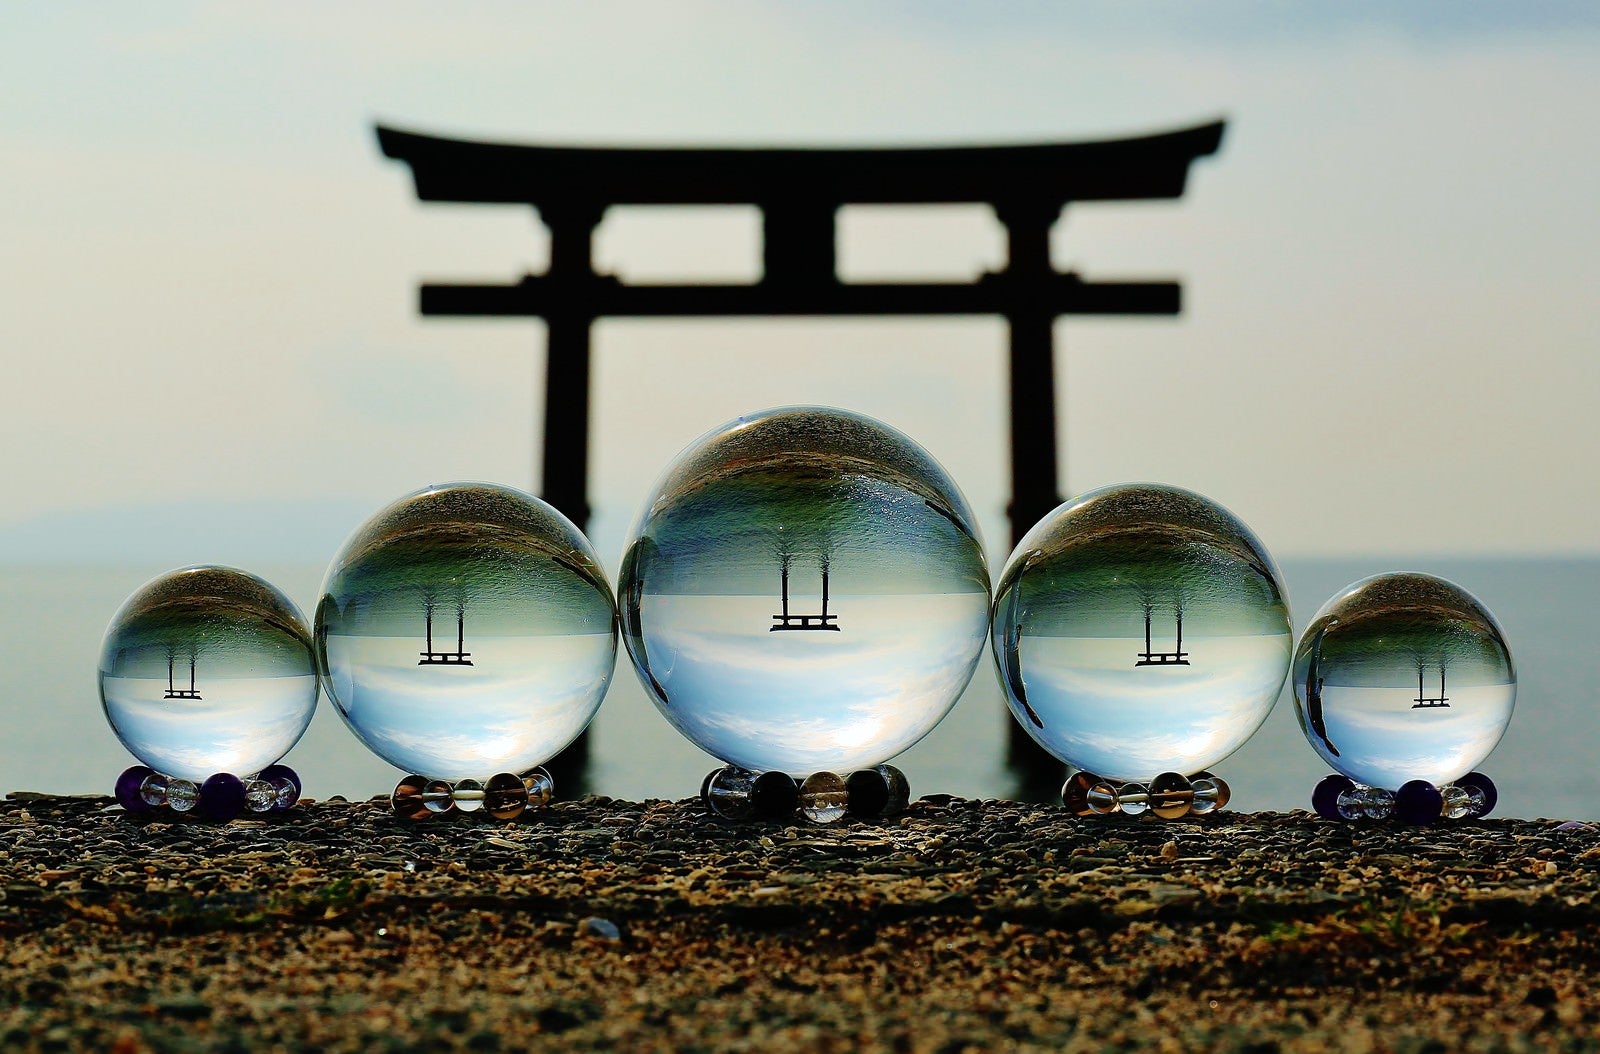 「浮かぶ鳥居と水晶玉撮影」の写真